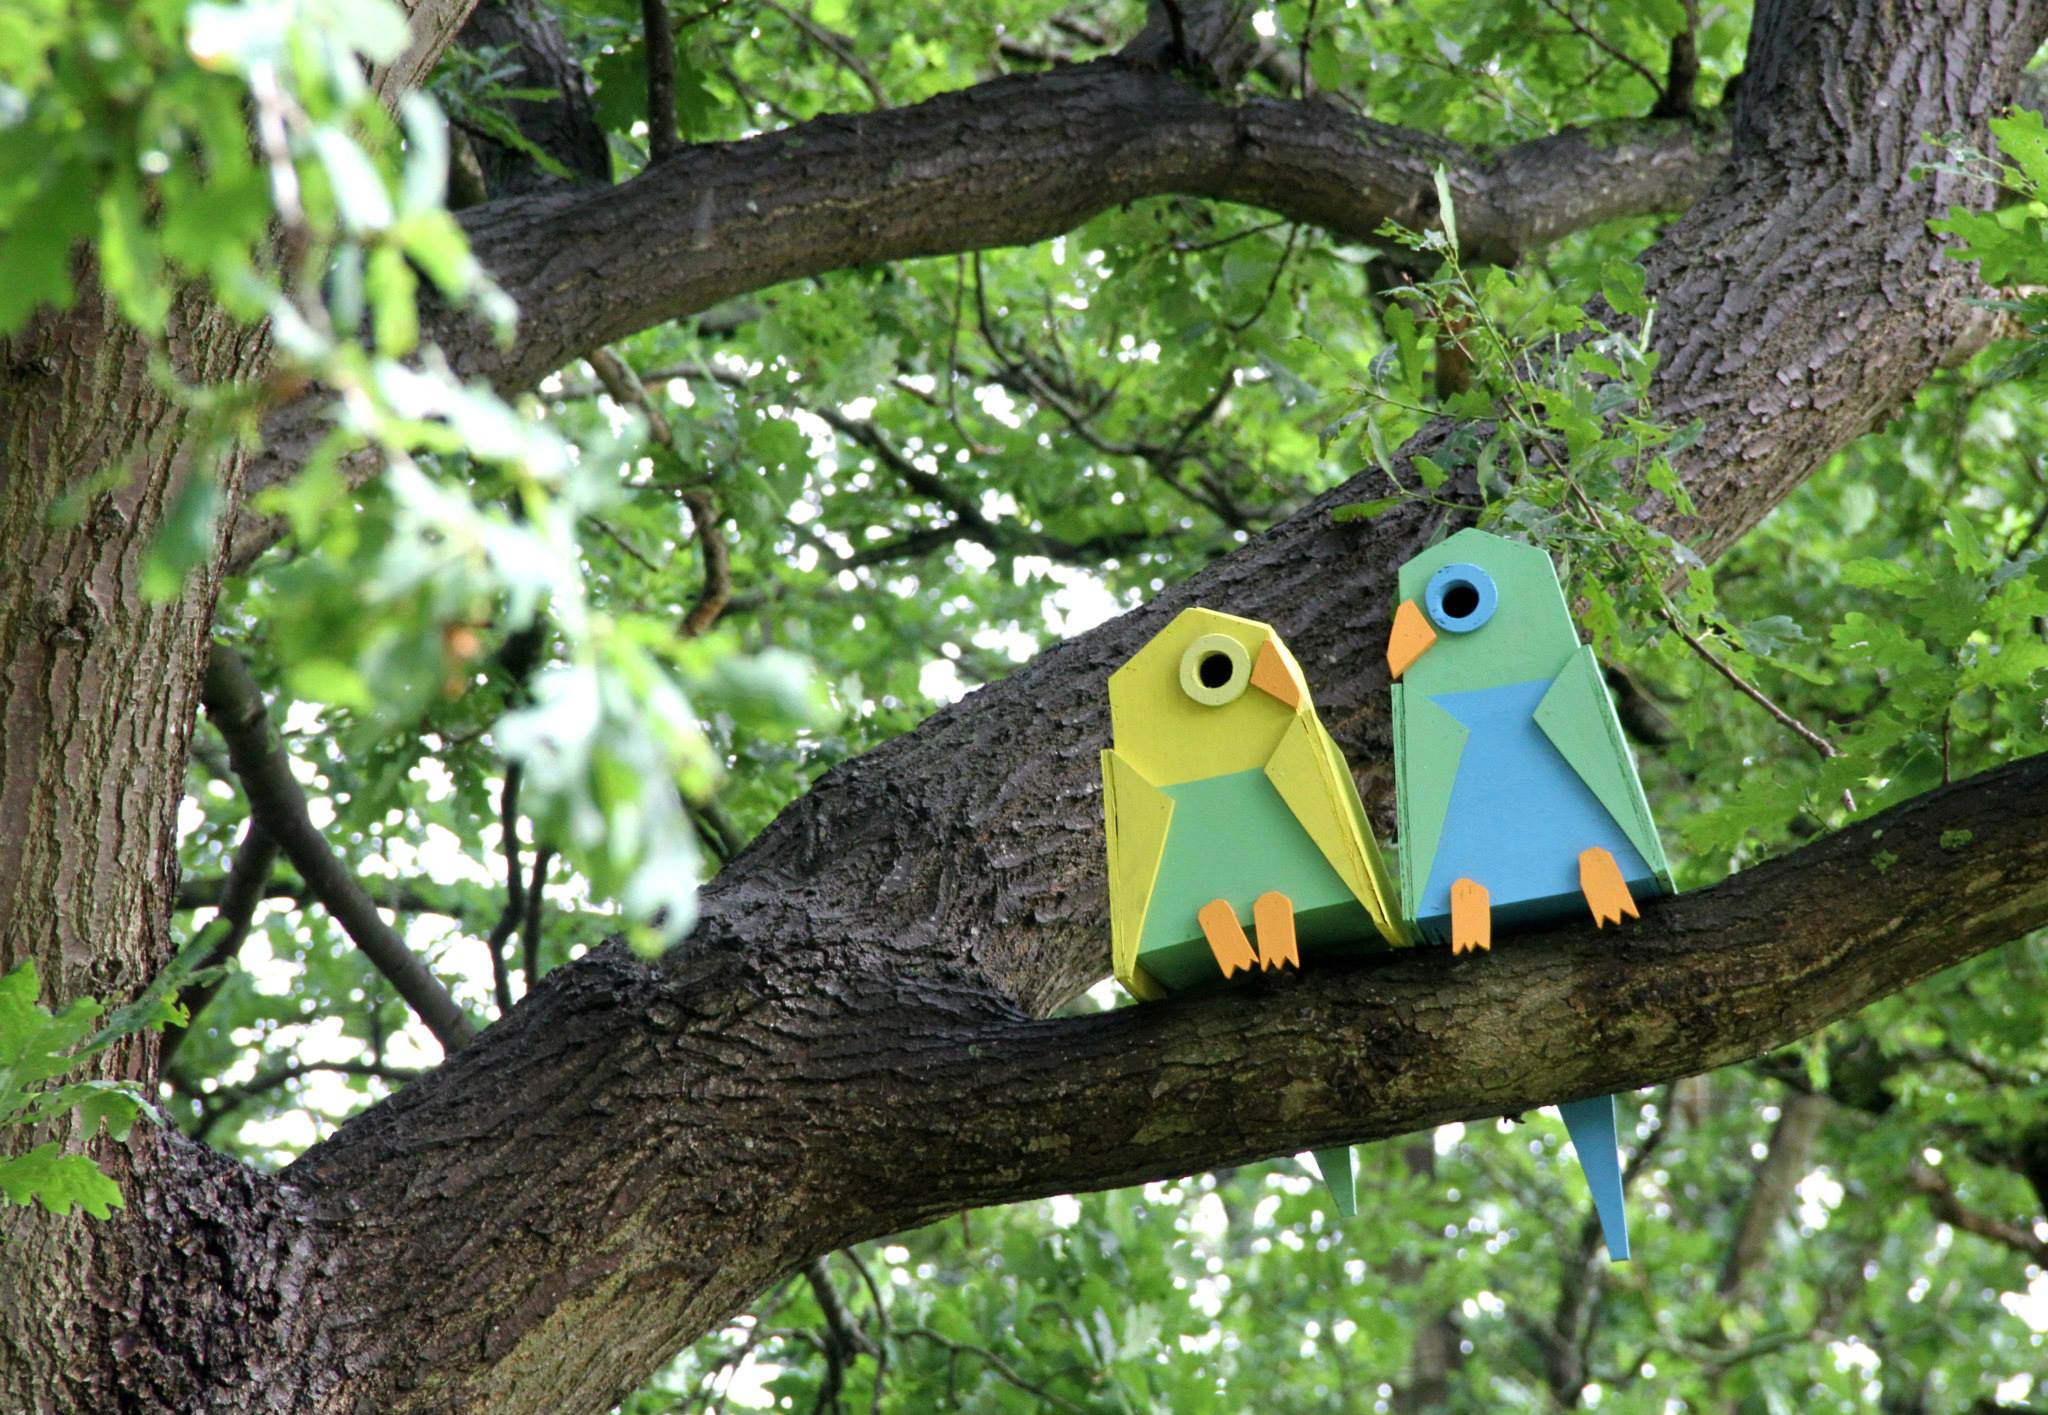 Rumah burung berbentuk burung yang dipasang di pohon di sebuah taman kota. Foto : thomasdambo.com